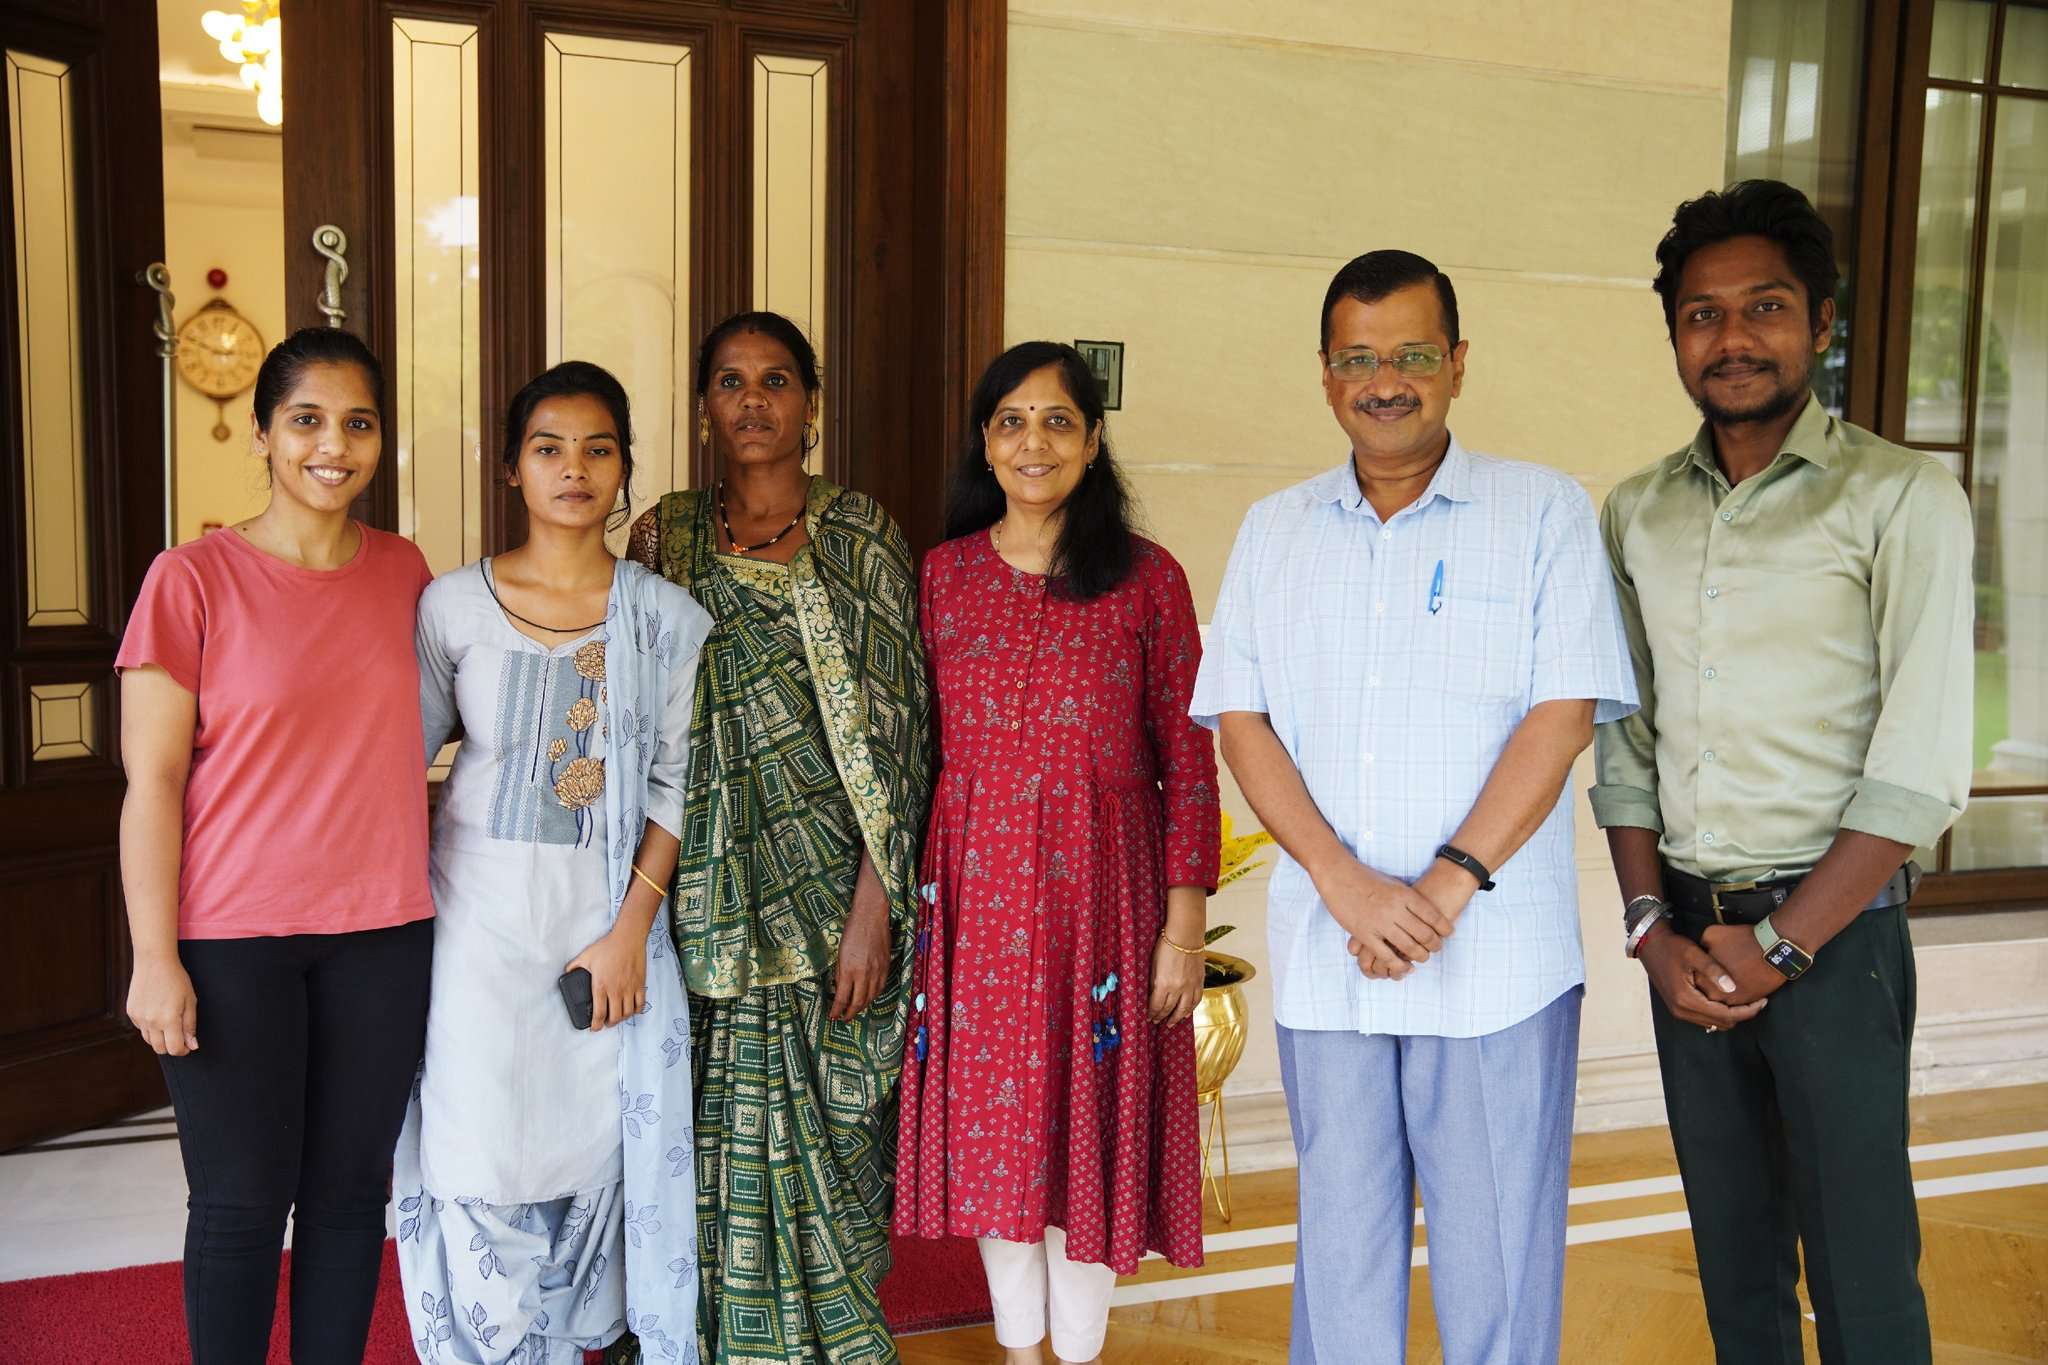 Delhi: गुजरात के सफाई कर्मचारी हर्ष ने अपने परिवार के साथ किया सीएम केजरीवाल के साथ लंच, मिलकर हुए भावुक, जानिए क्या बोले हर्ष